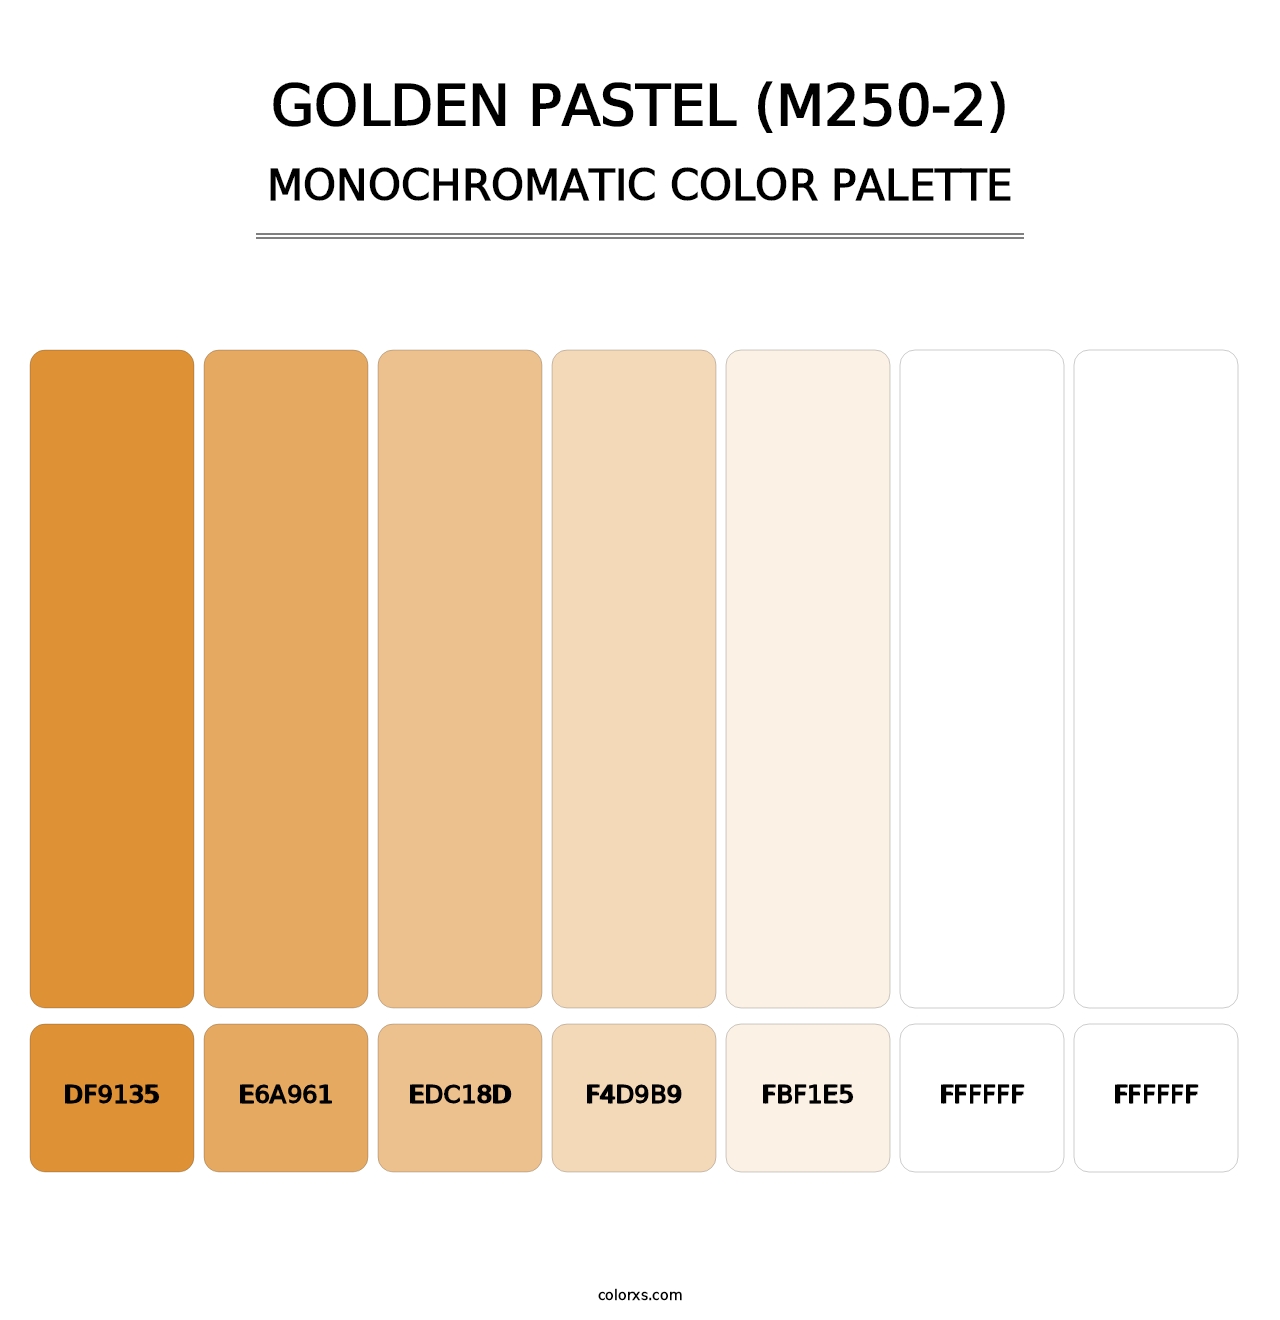 Golden Pastel (M250-2) - Monochromatic Color Palette